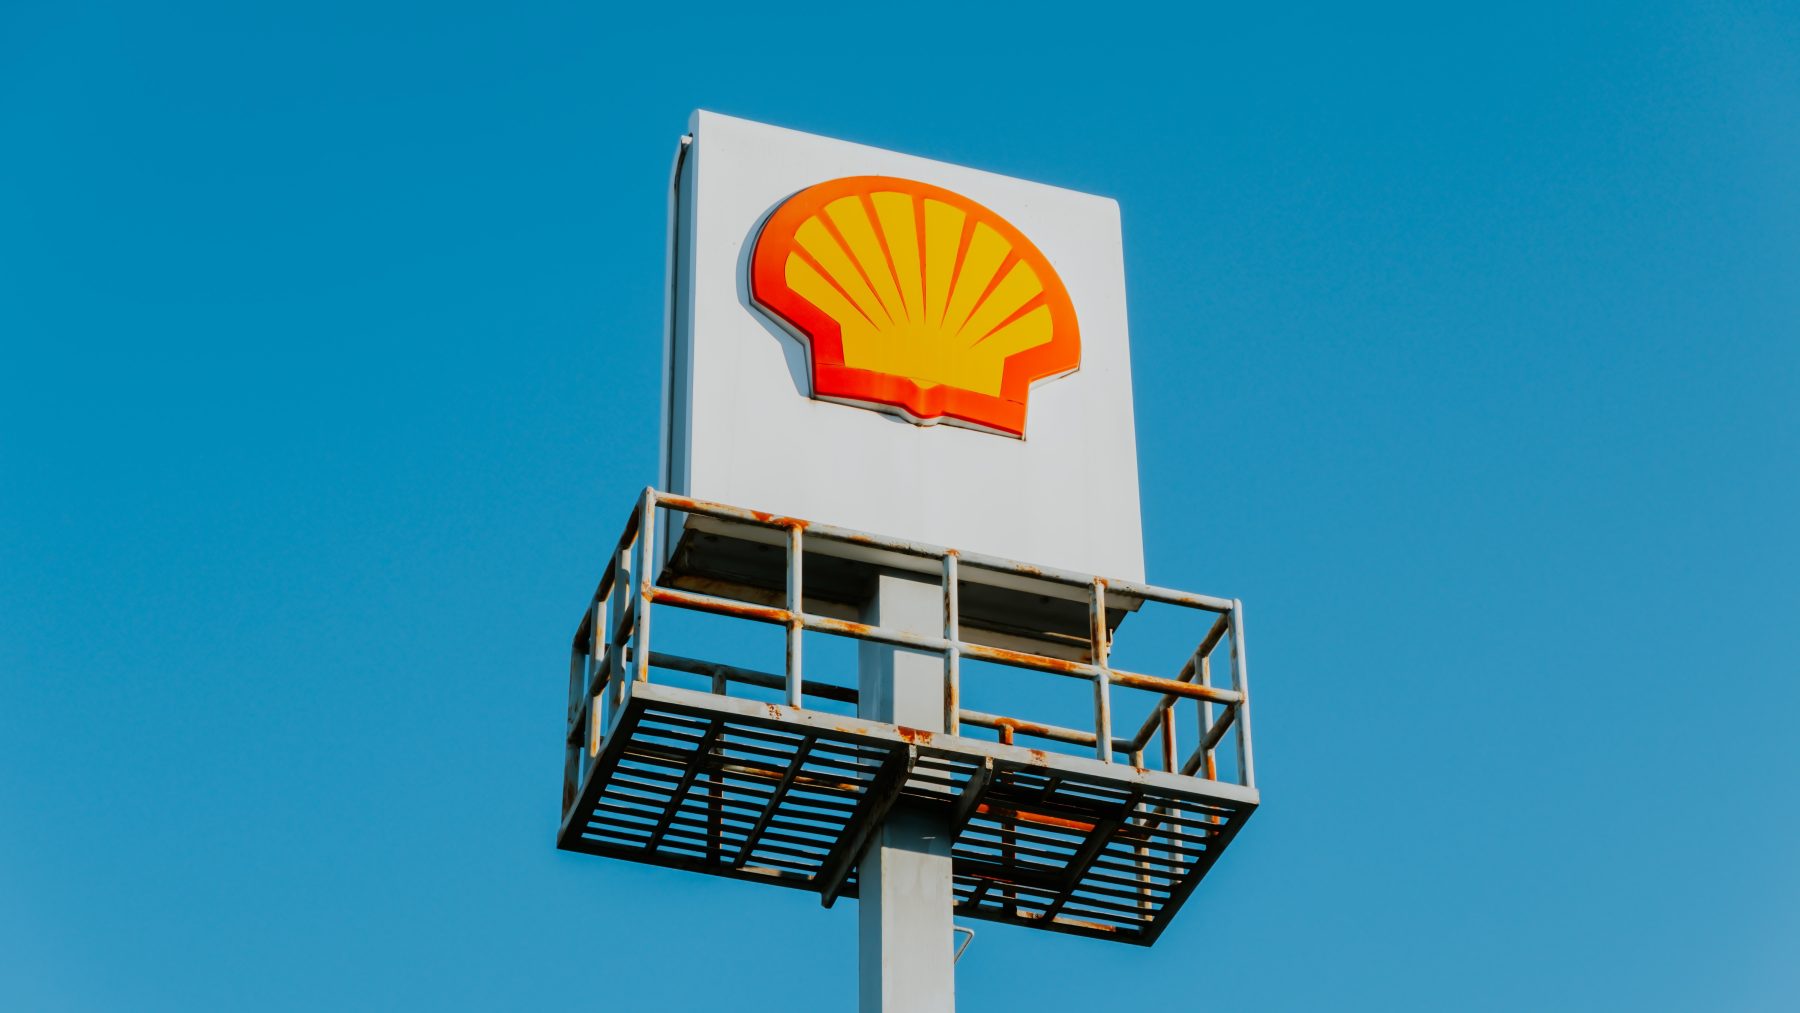 En de winnaar is... Reclame Shell en Staatsbosbeheer wint ‘vieze’ prijs Greenpeace